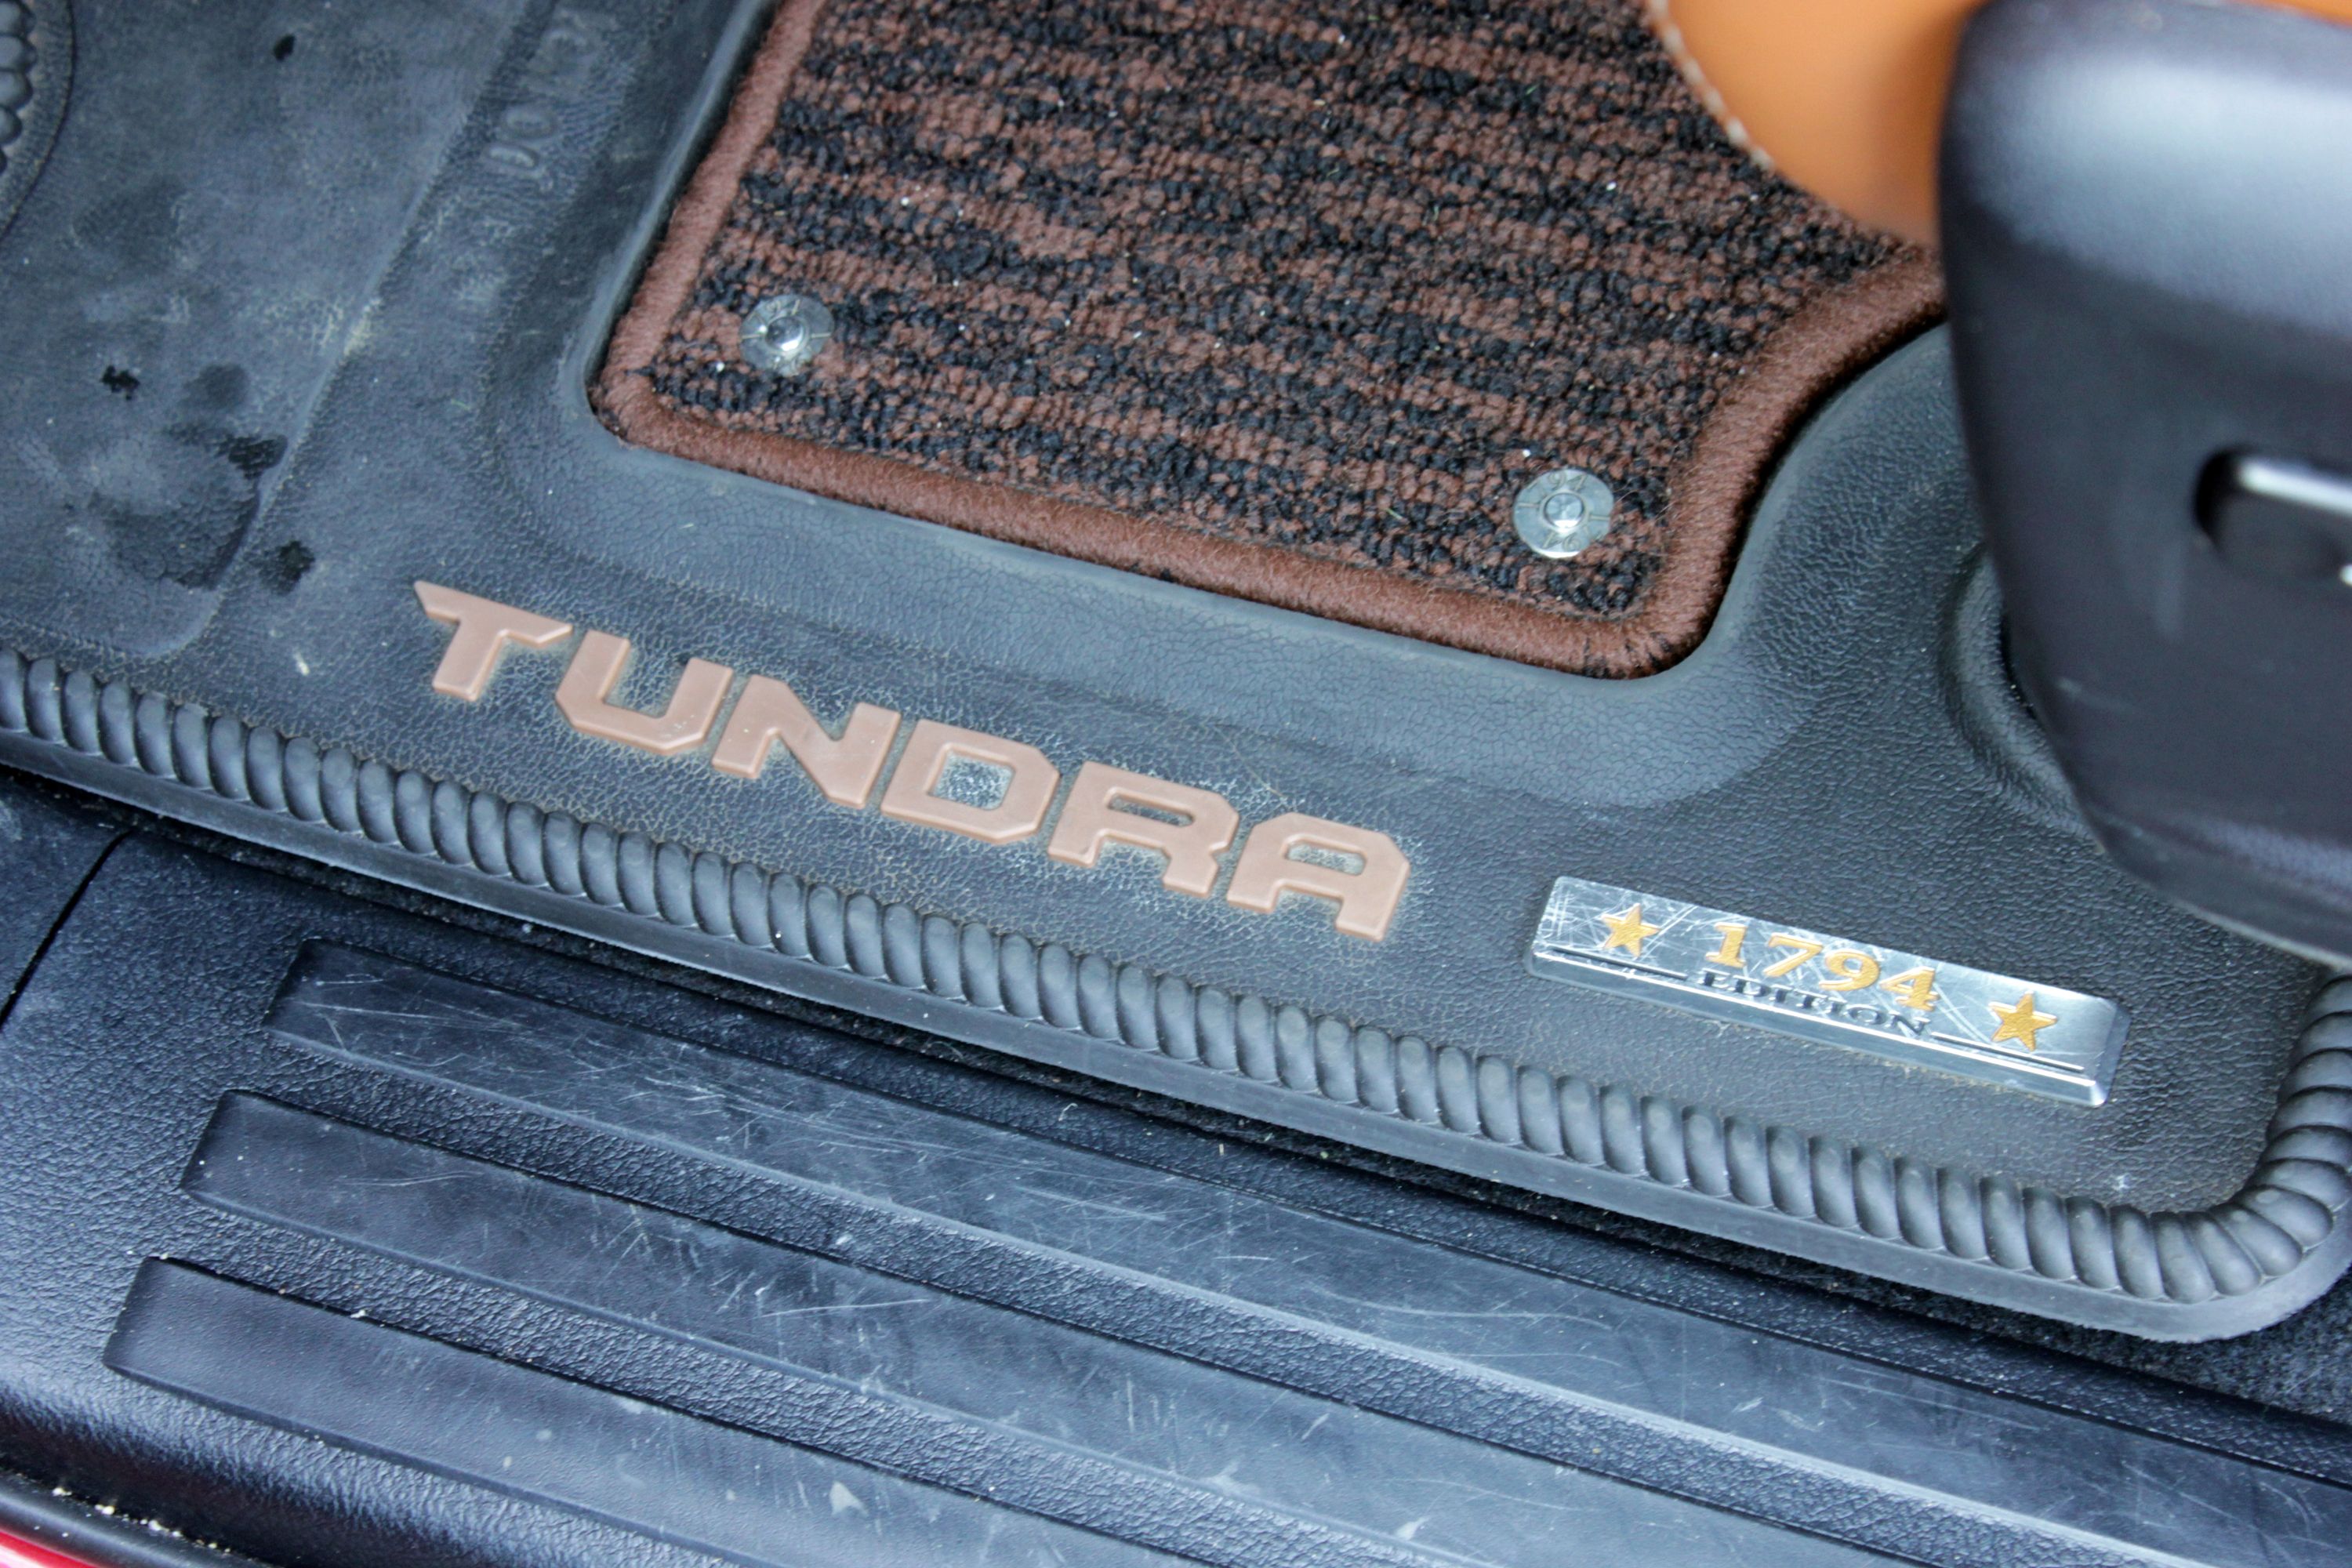 2014 Toyota Tundra 1794 - Driven